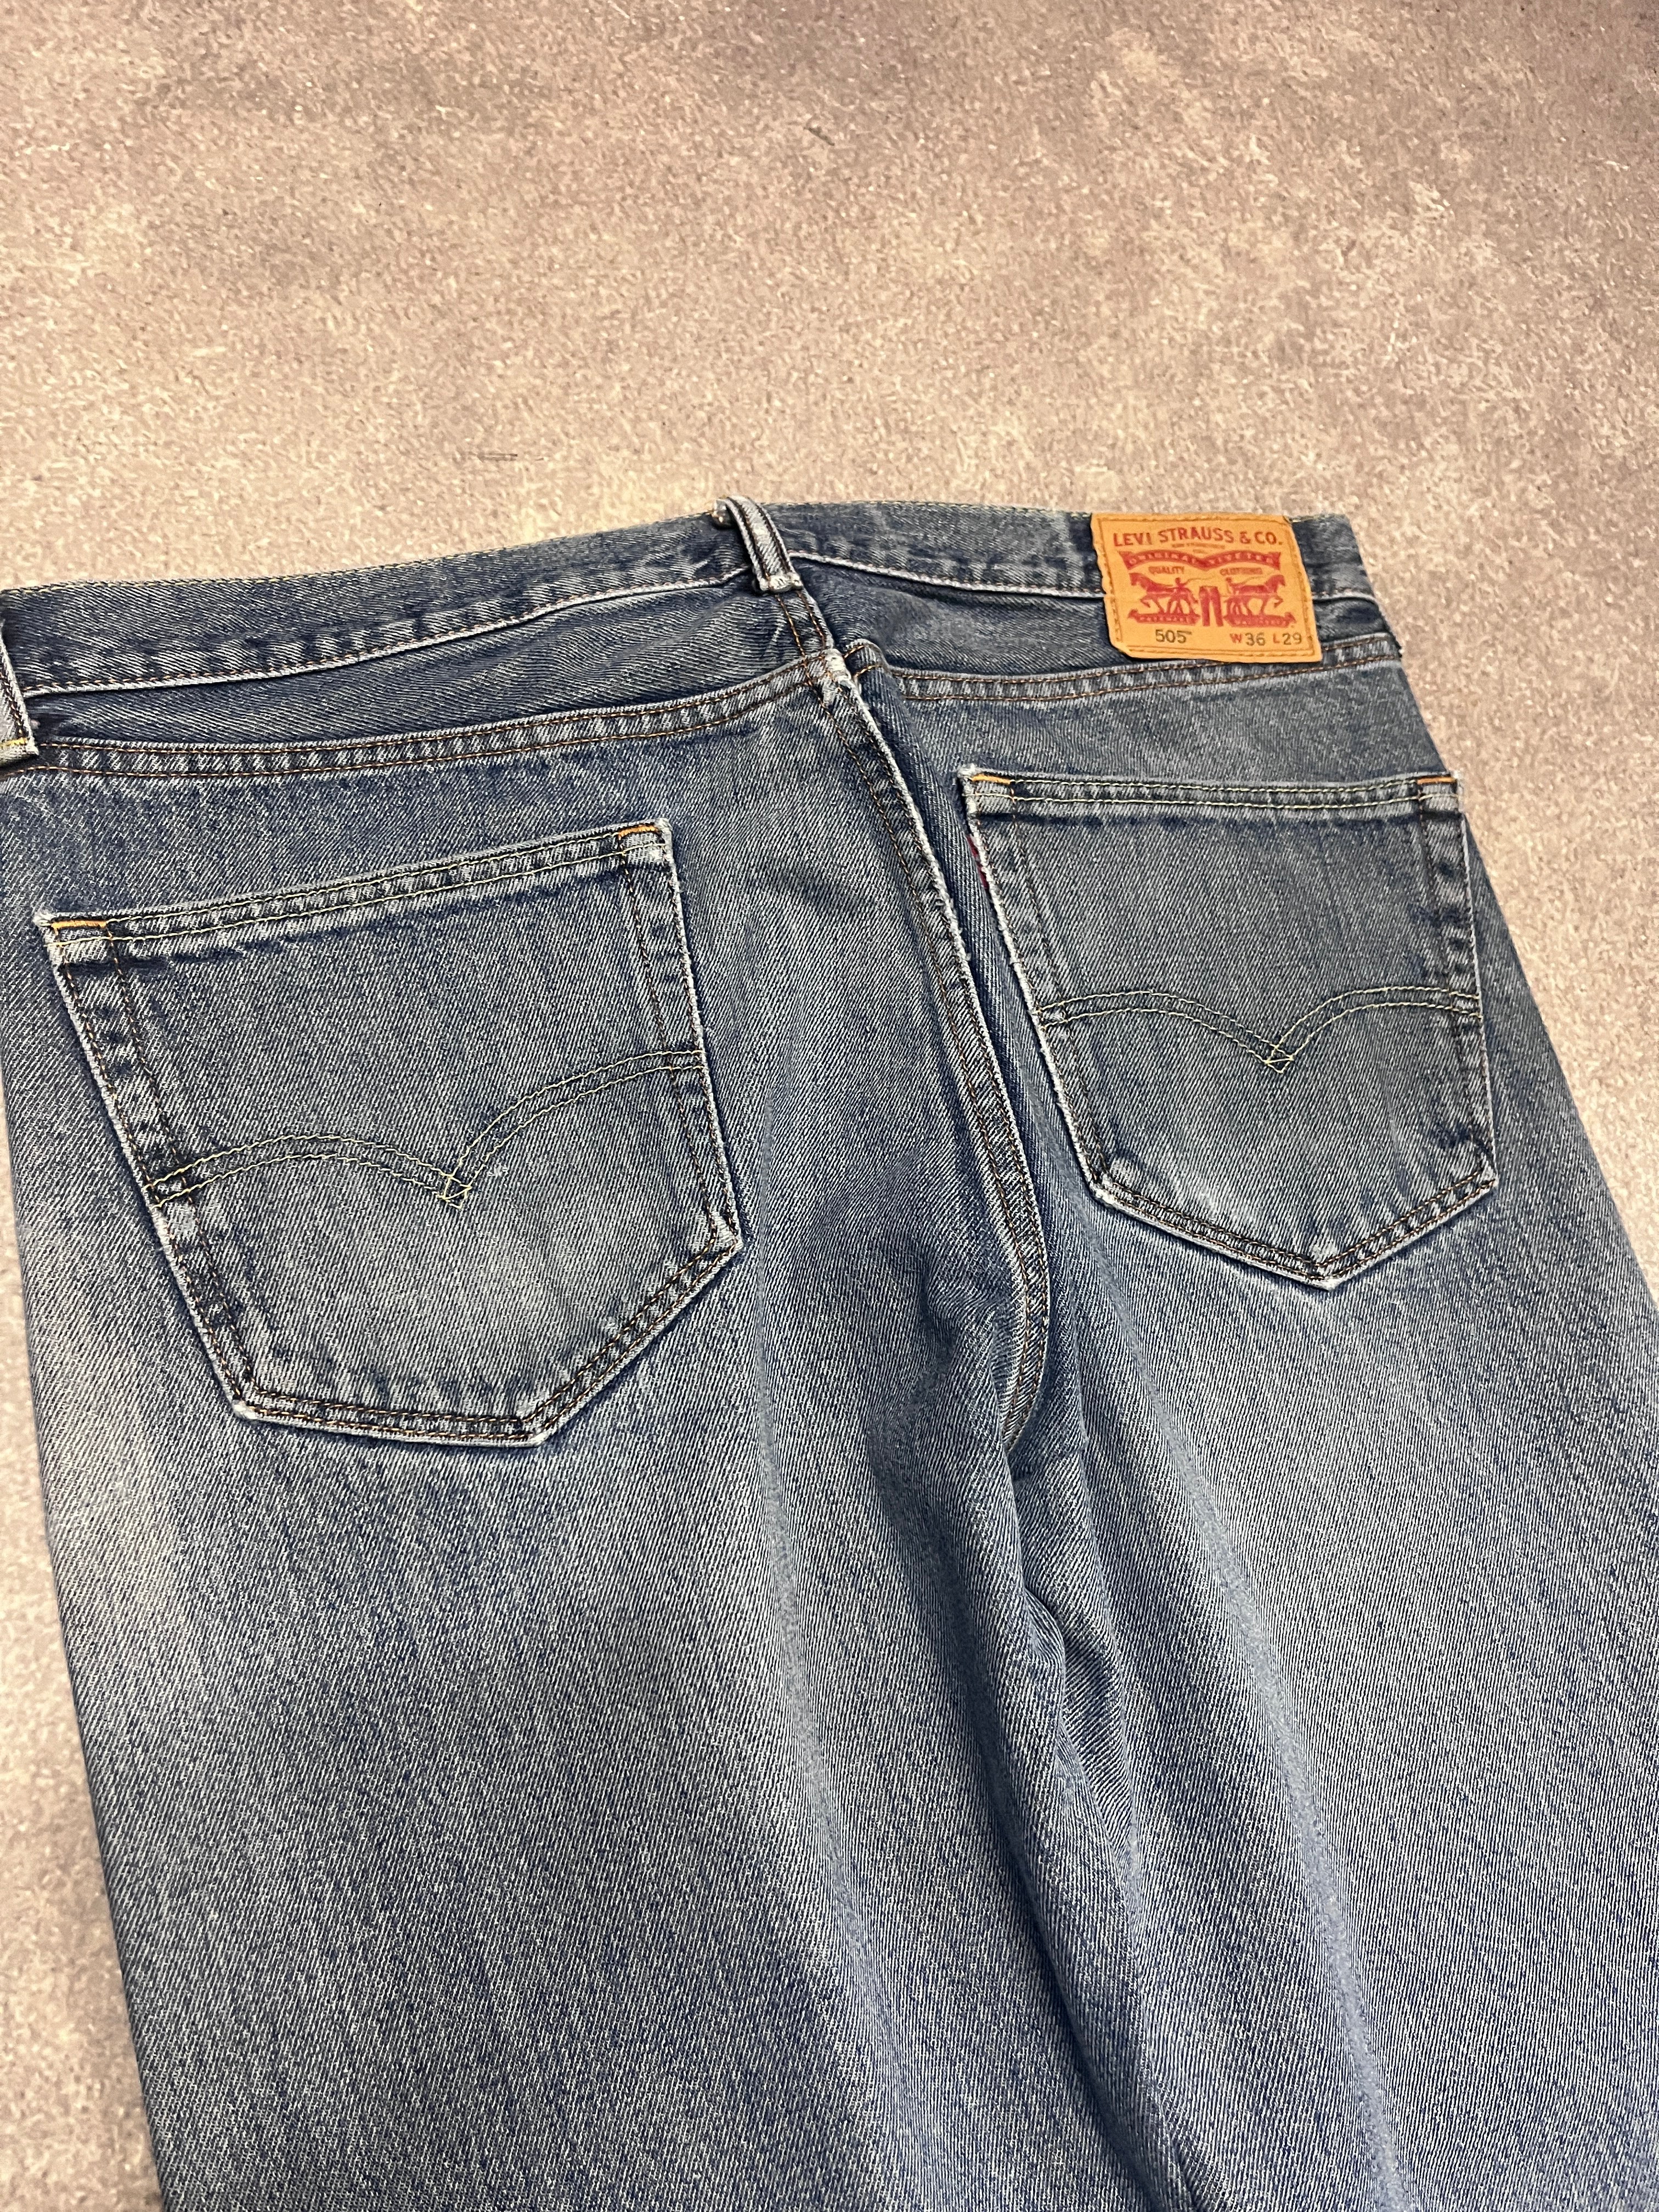 Vintage Levi 505 Denim Jeans Blue // W36 L29 - RHAGHOUSE VINTAGE